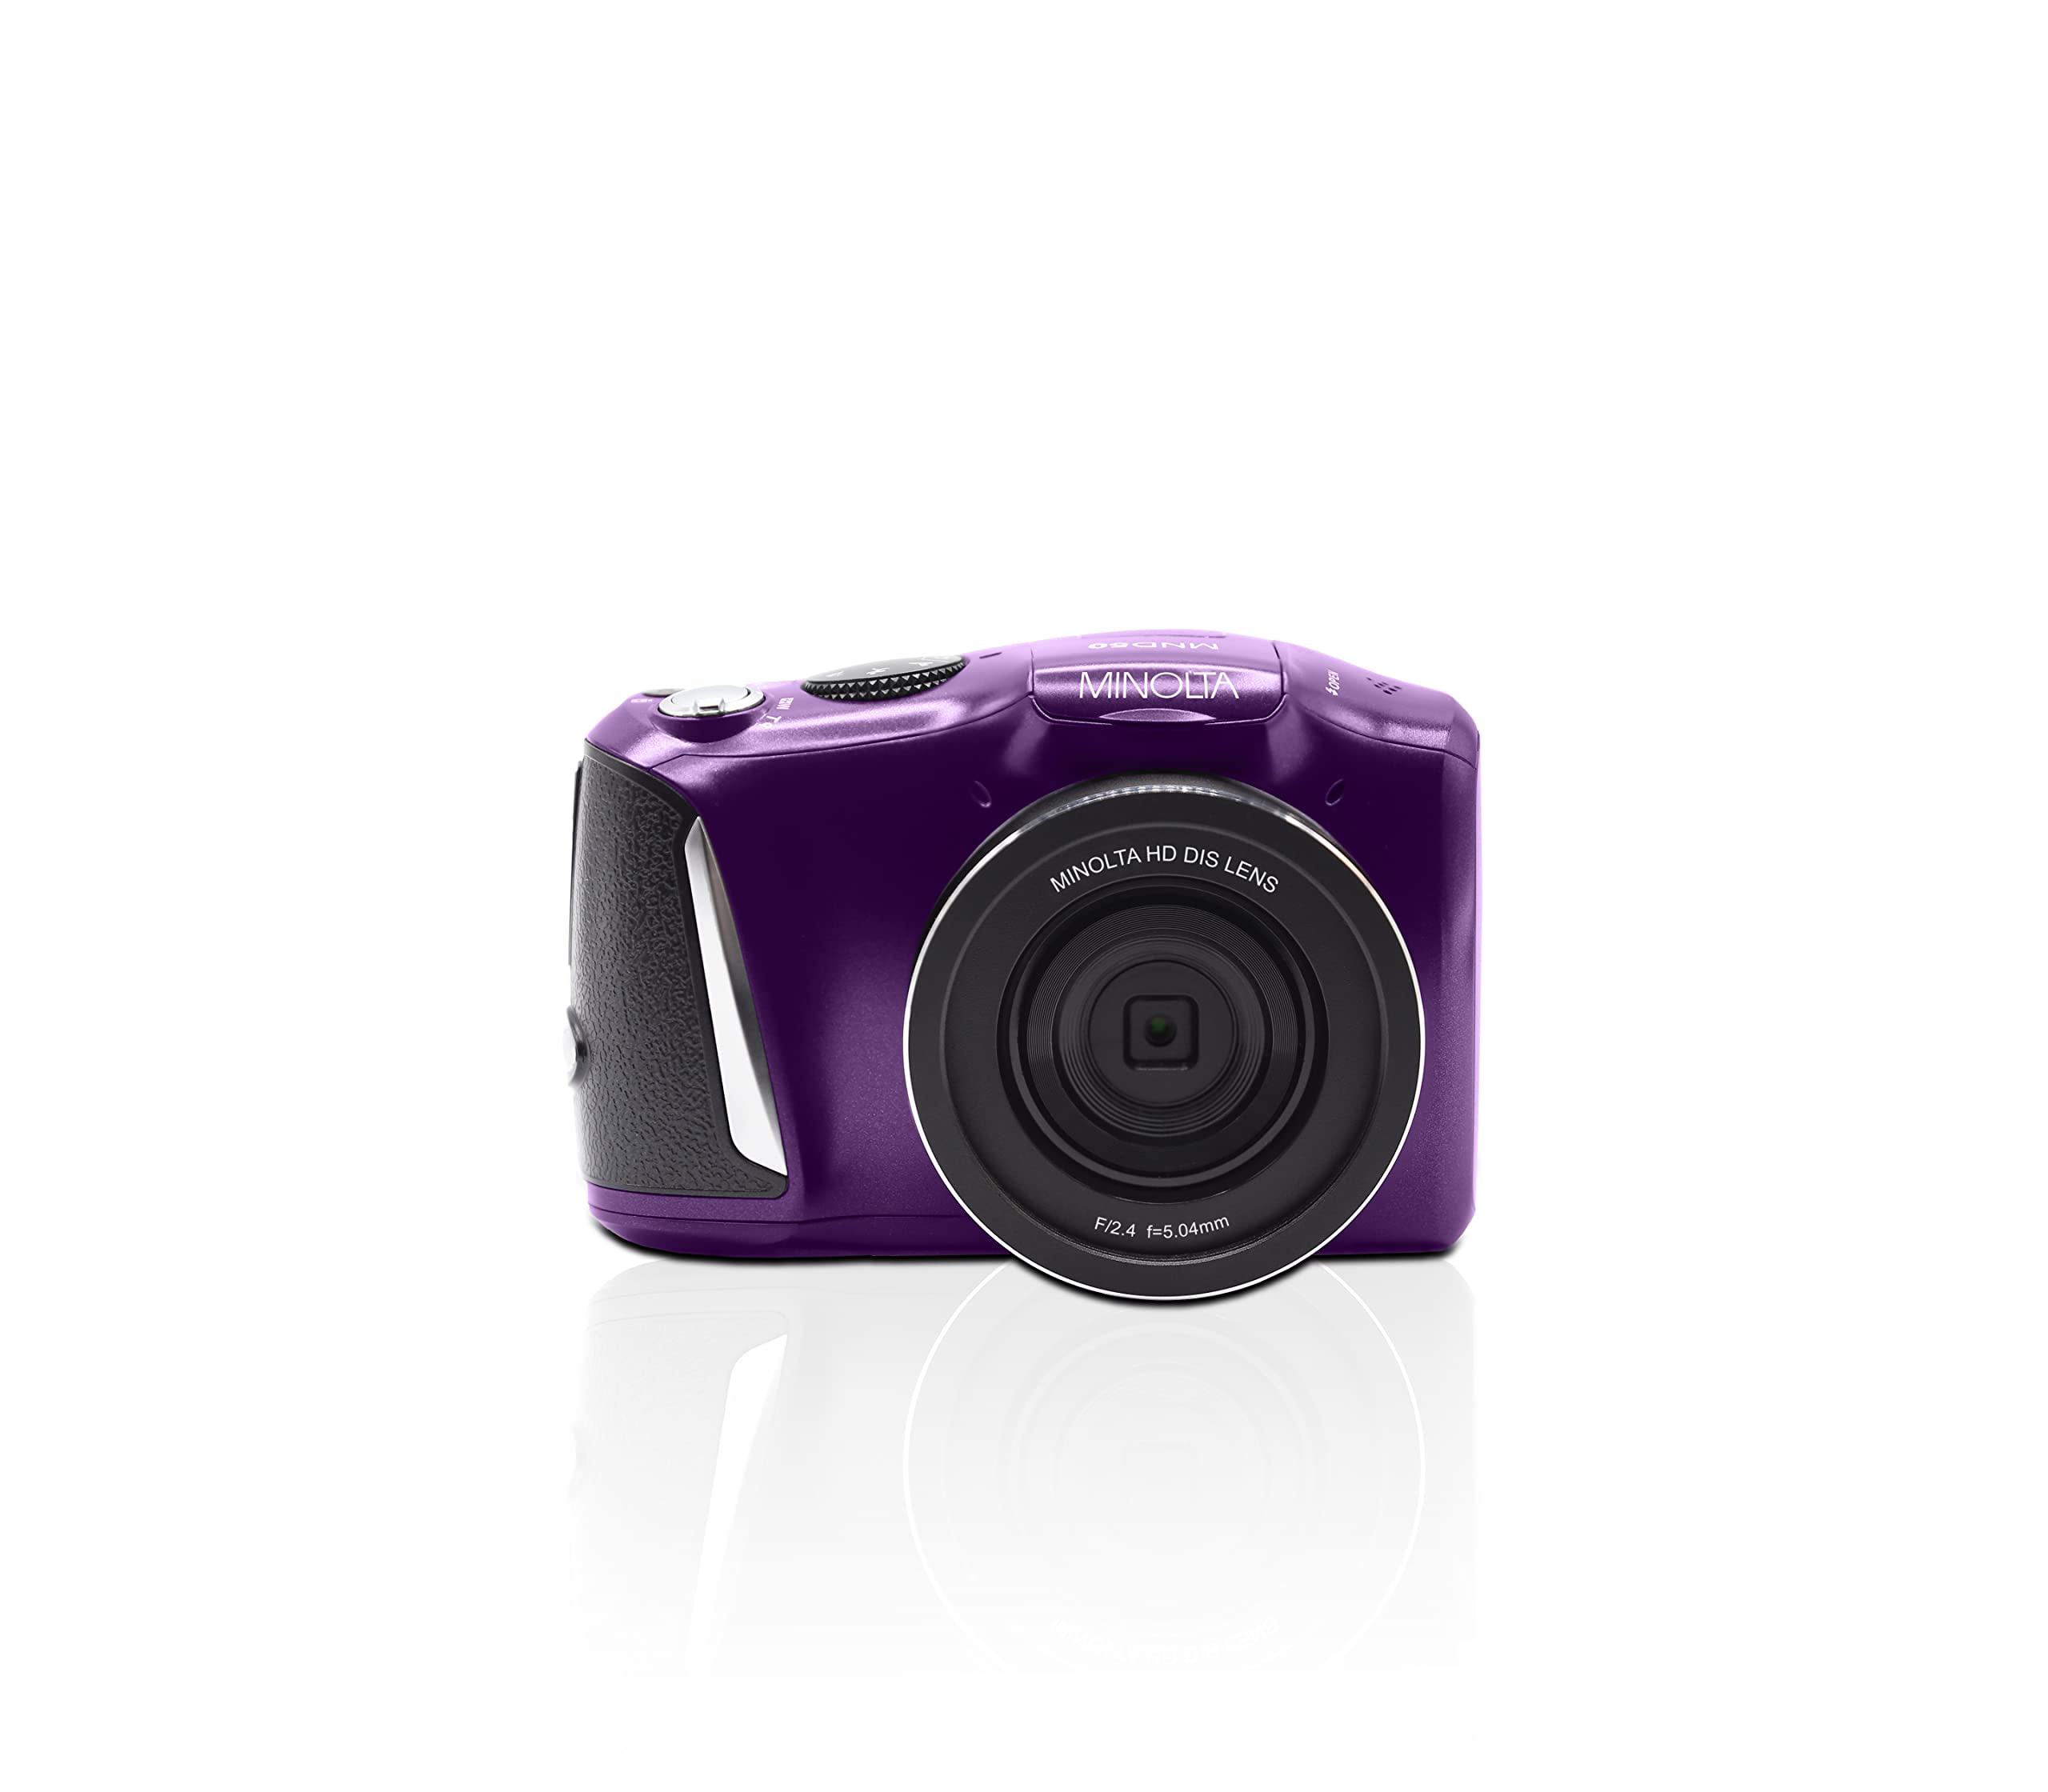 Minolta MND50 48 MP / 4K Ultra HD Digital Camera (Purple)